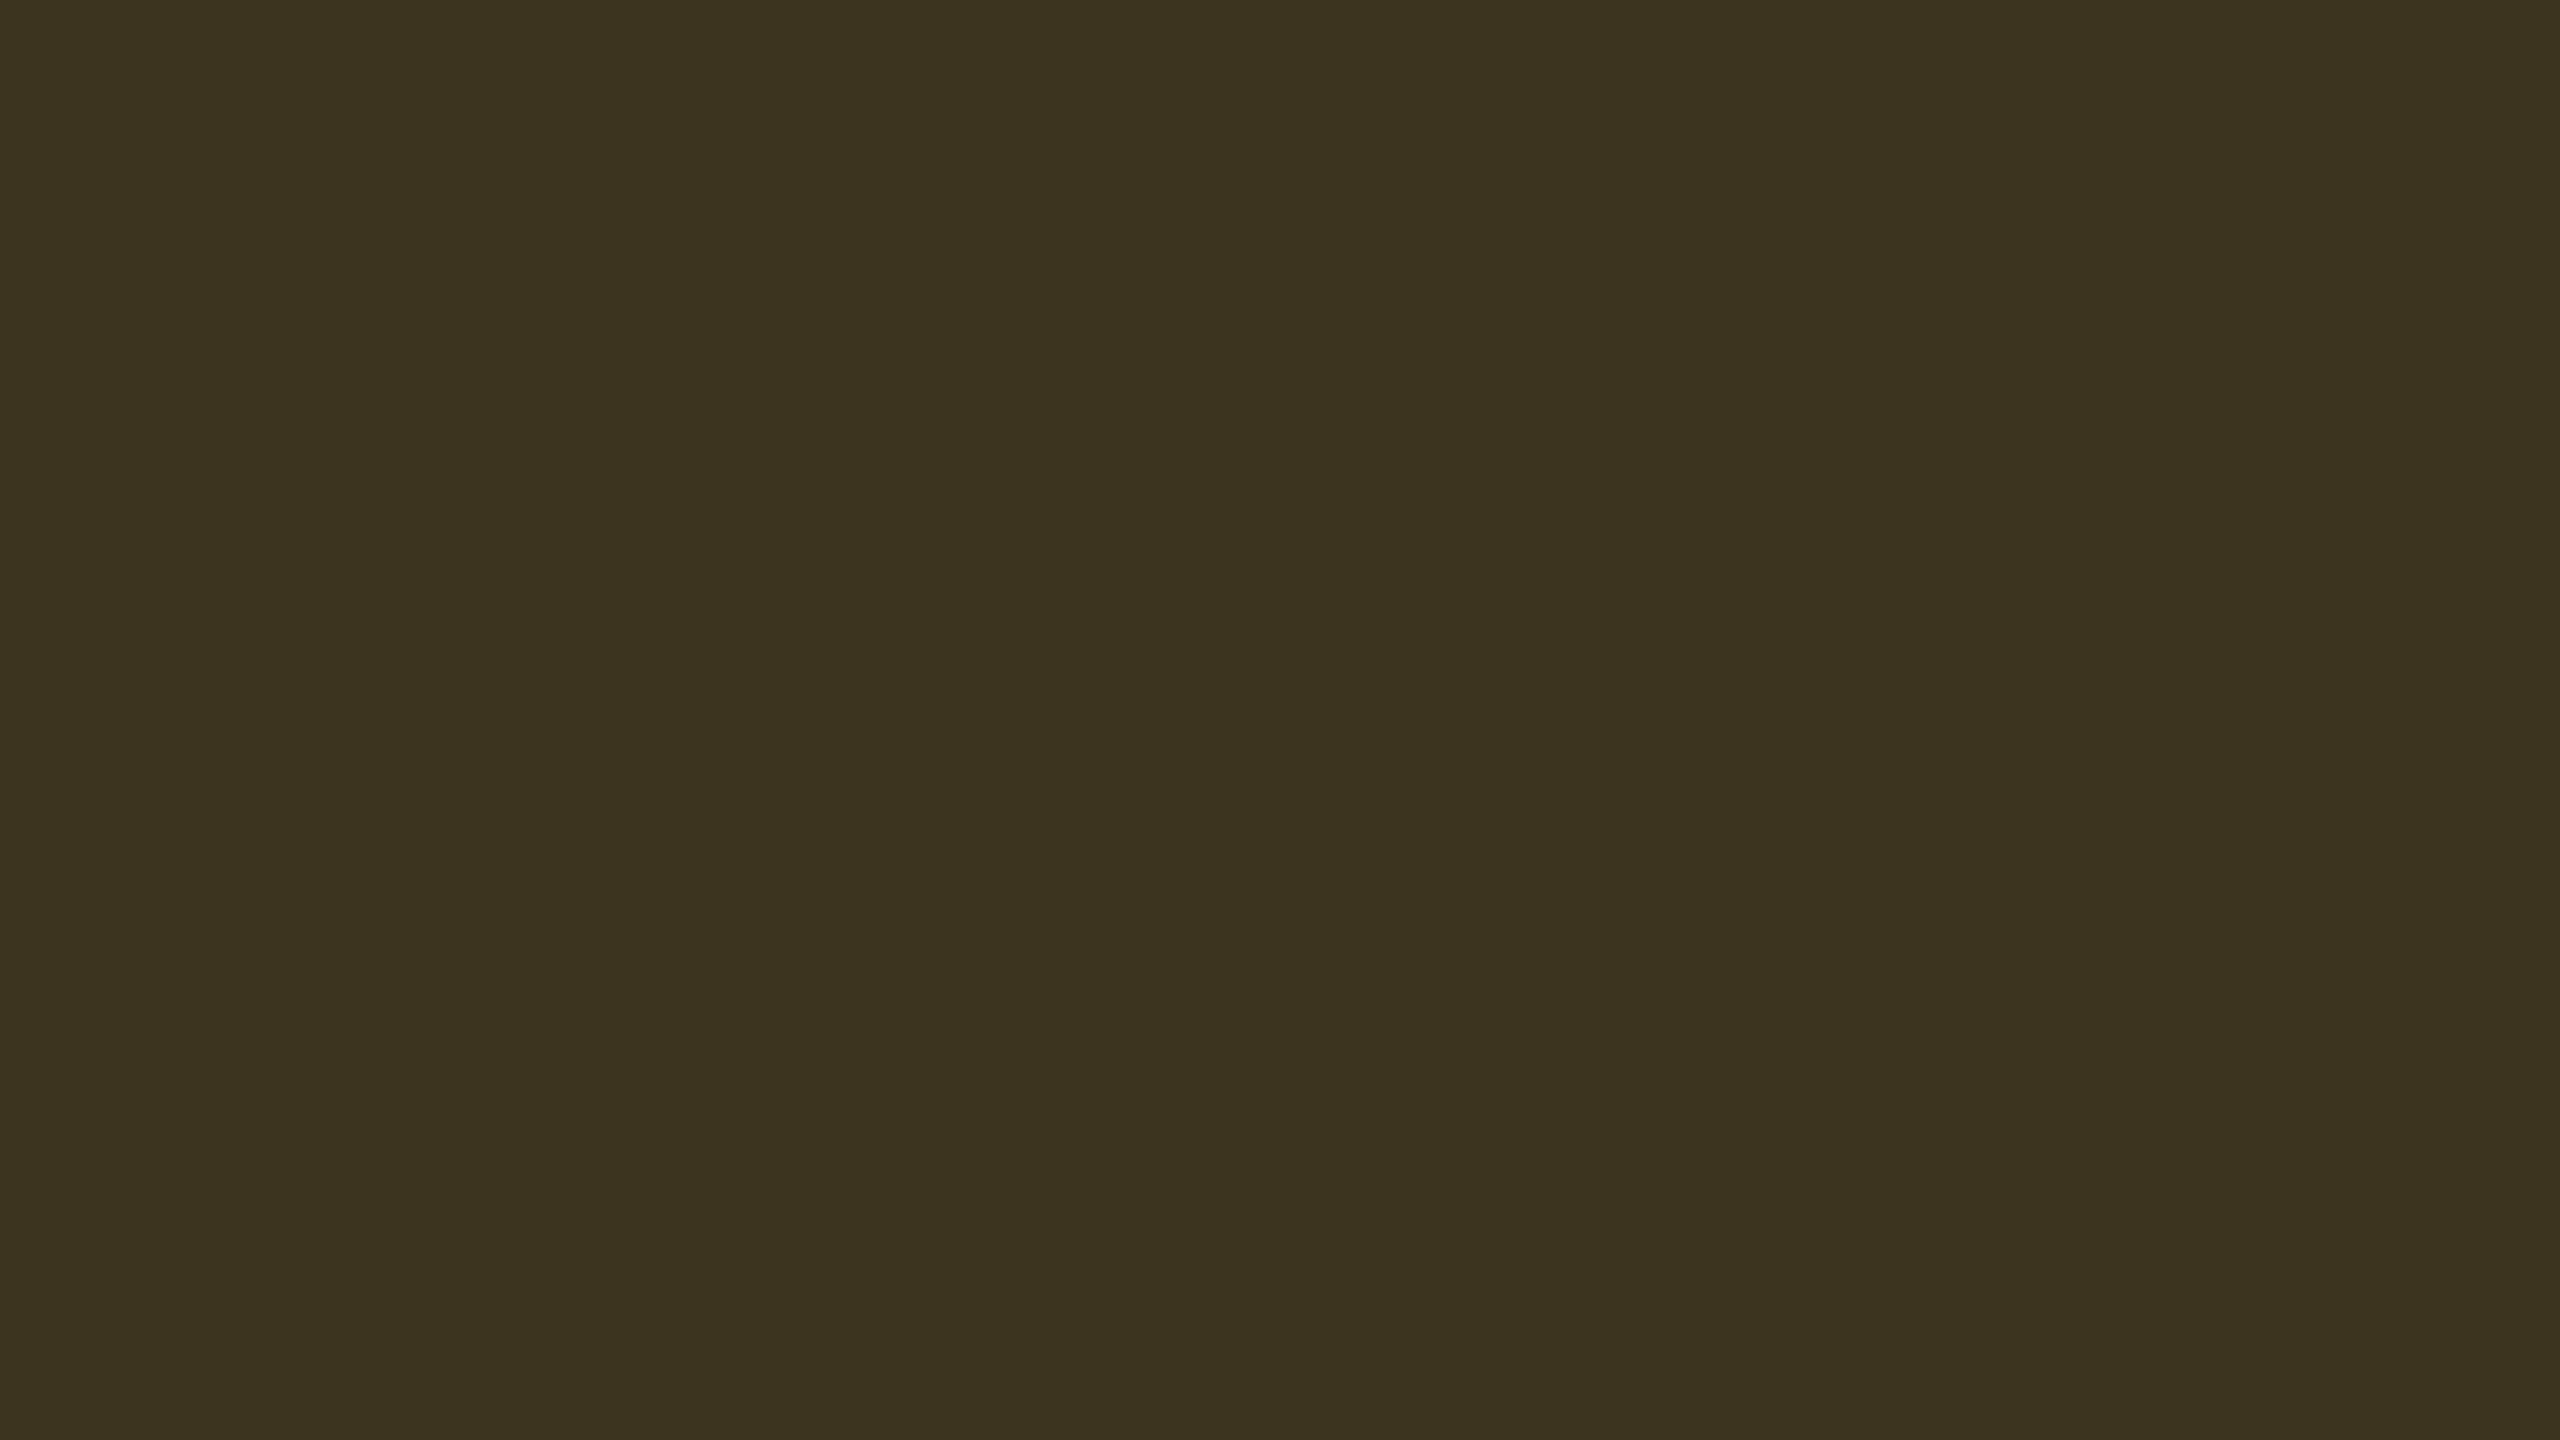 2560x1440 Olive Drab Number Seven Solid Color Background